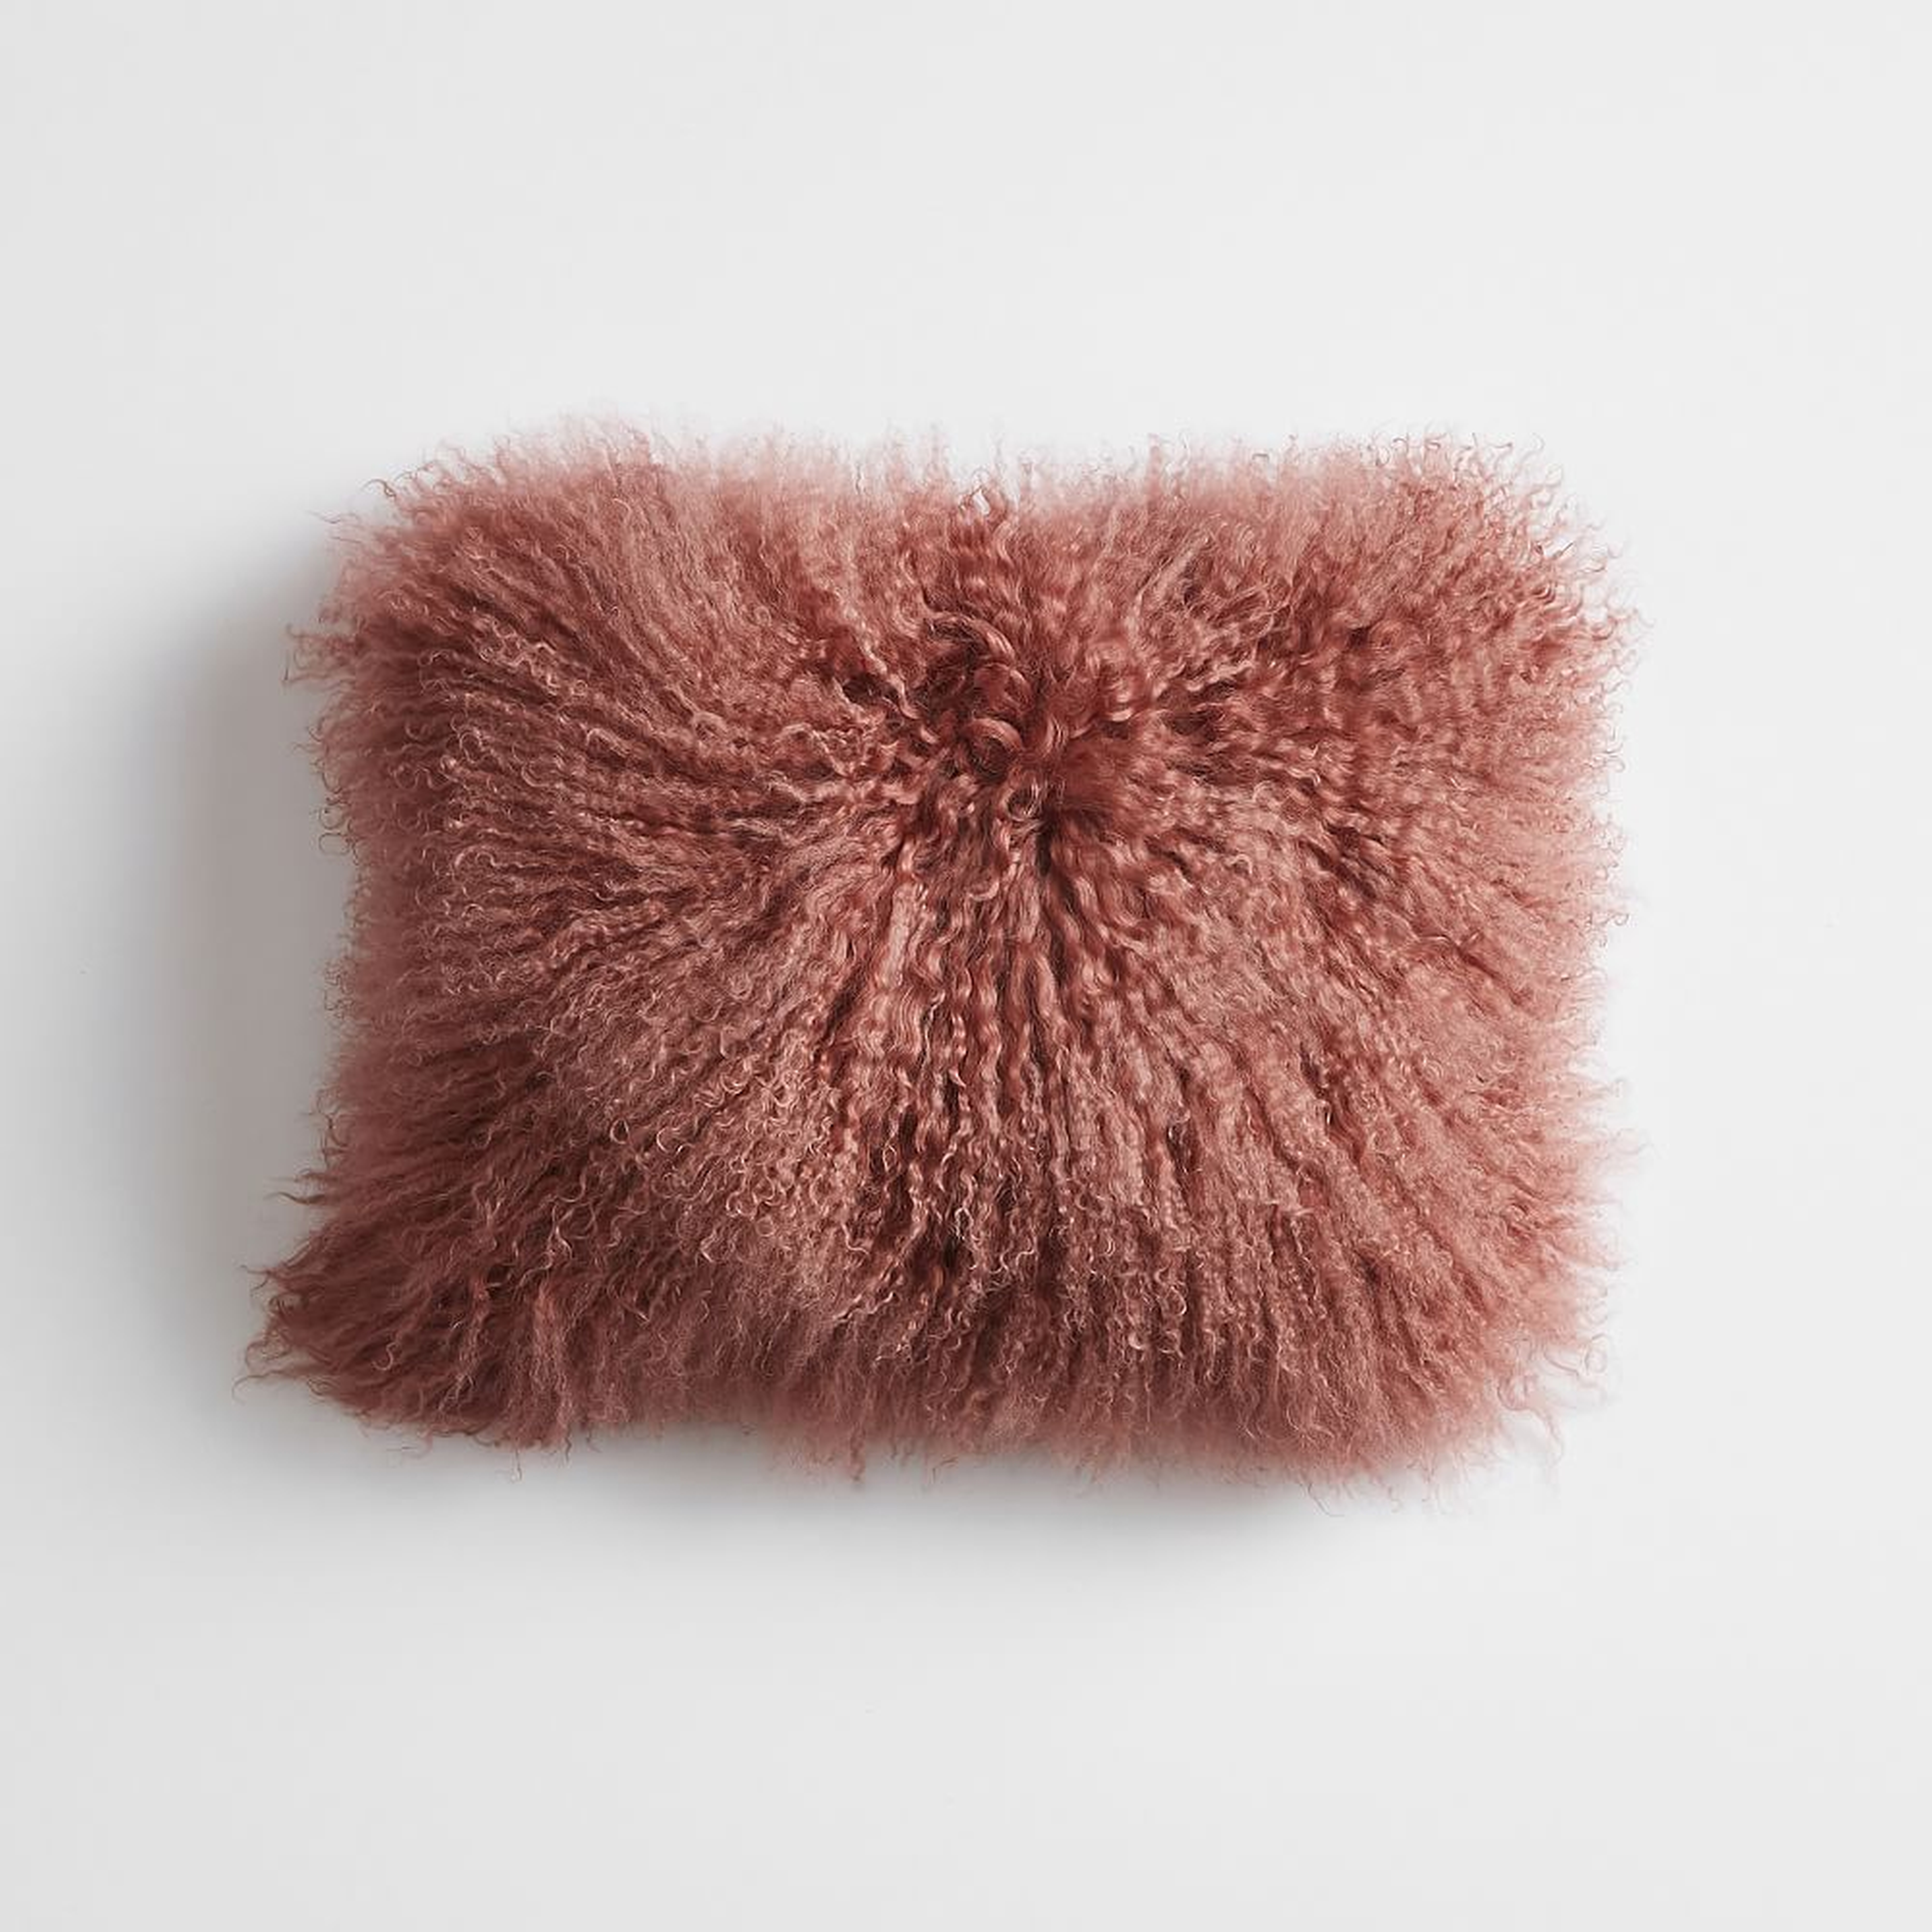 Mongolian Fur Pillow Cover + Insert, Pink Grape Fruit - Pottery Barn Teen